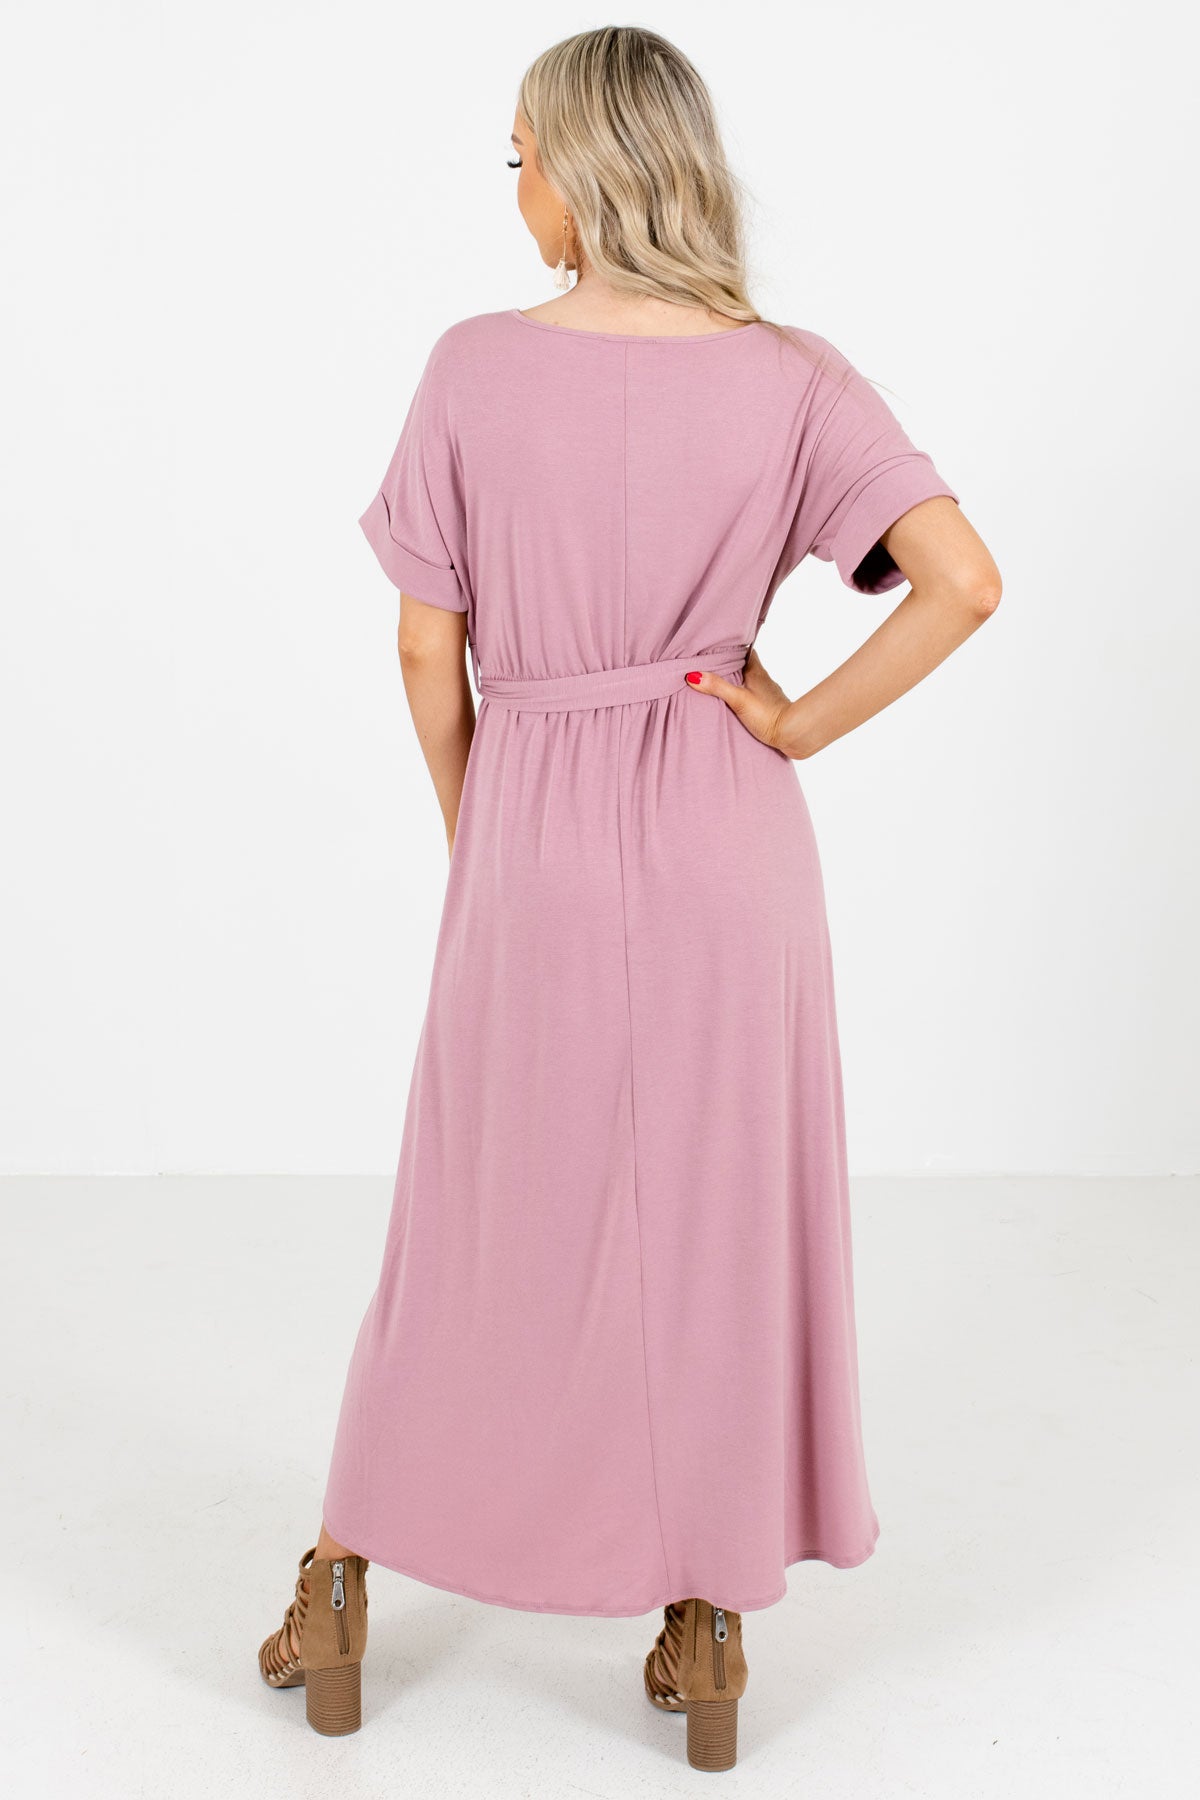 Women's Pink High-Low Hem Boutique Maxi Dress